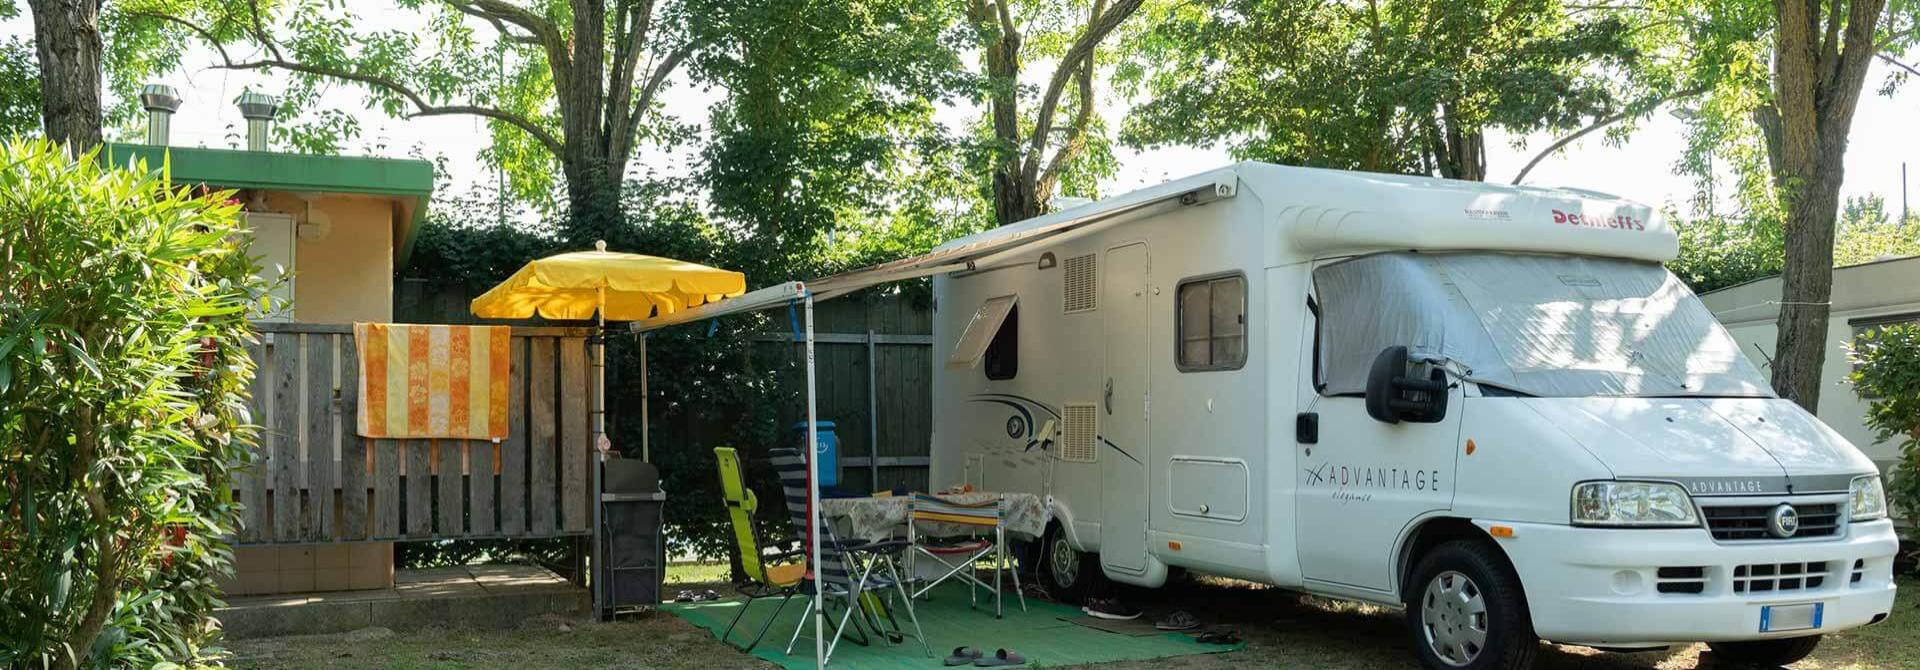 campingtahiti en campsite 026